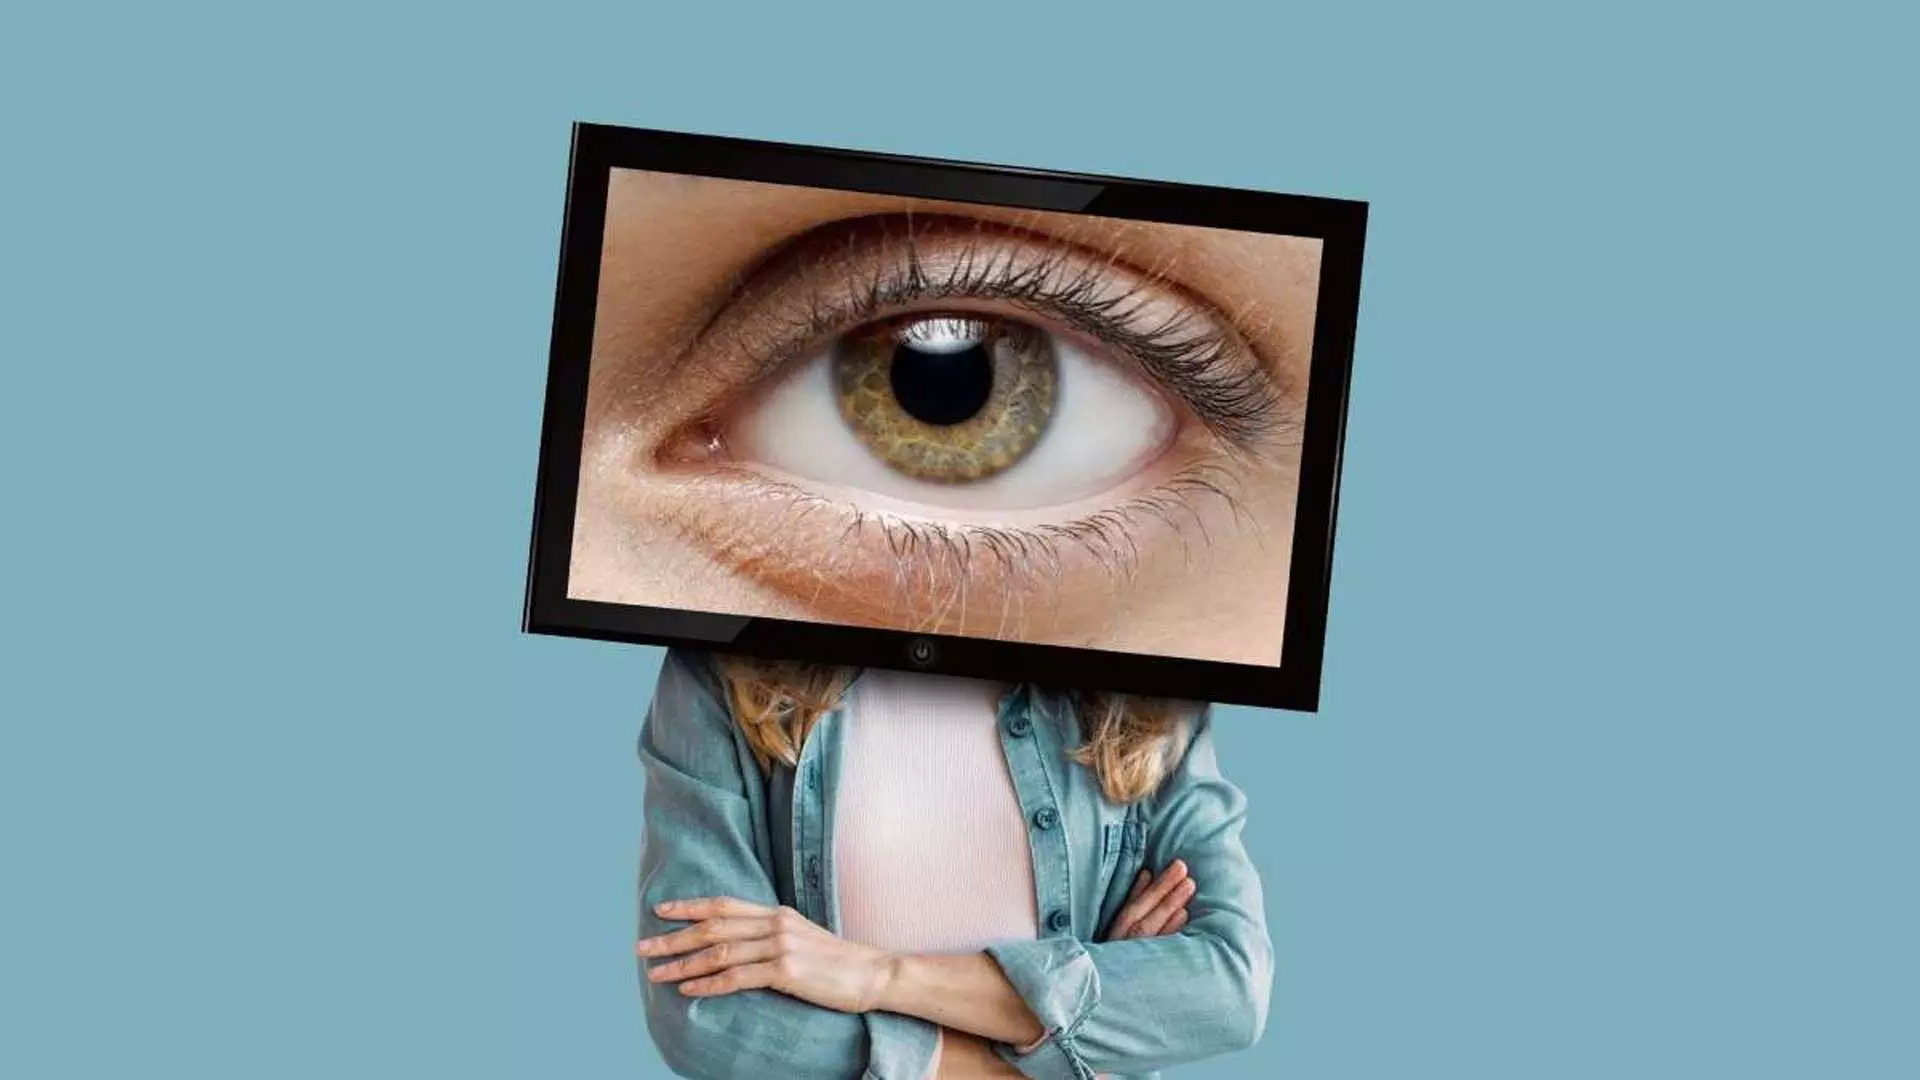 आँखों को स्क्रीन से निकलने वाली नीली रोशनी से बचाने के लिए आवश्यक सुझाव